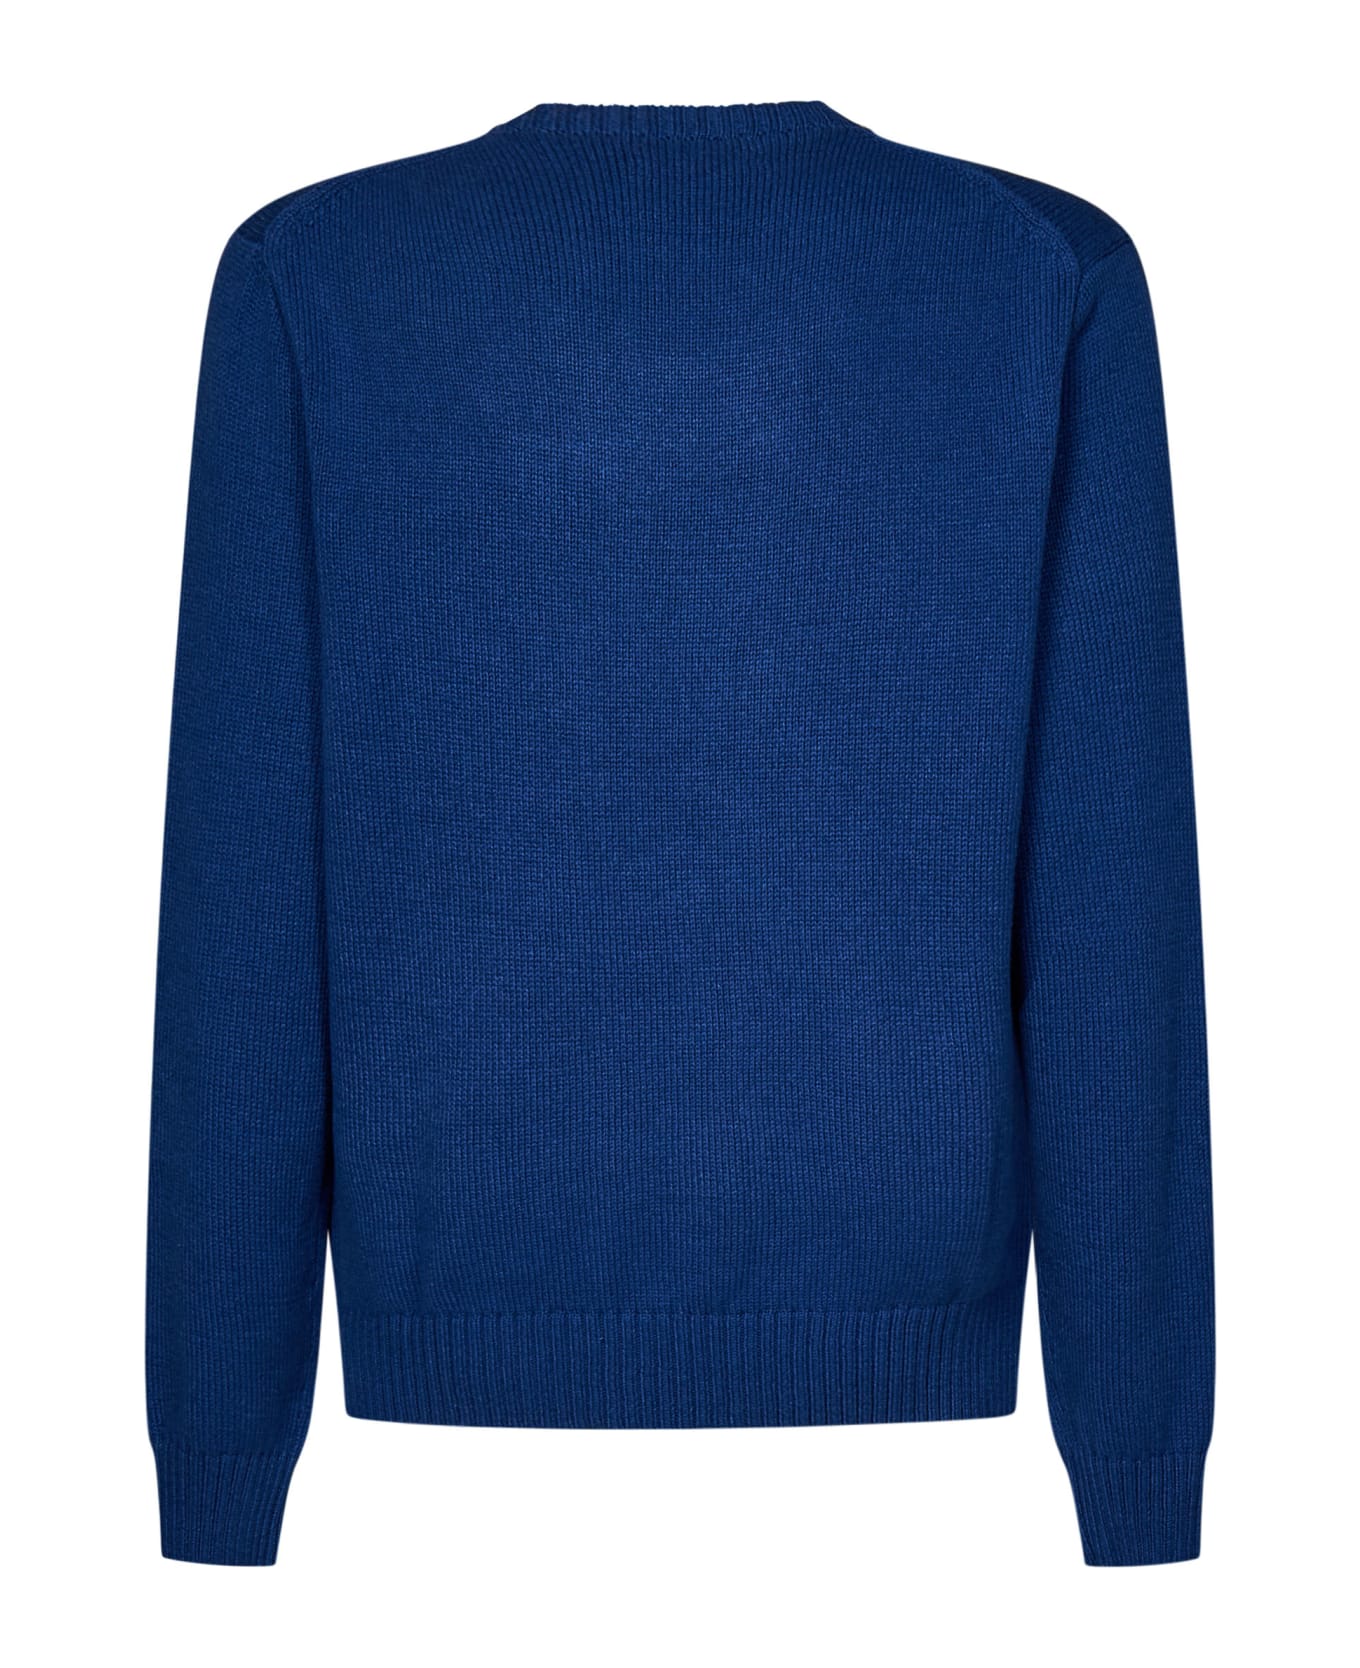 Polo Ralph Lauren Polo Bear Sweater - Blue ニットウェア